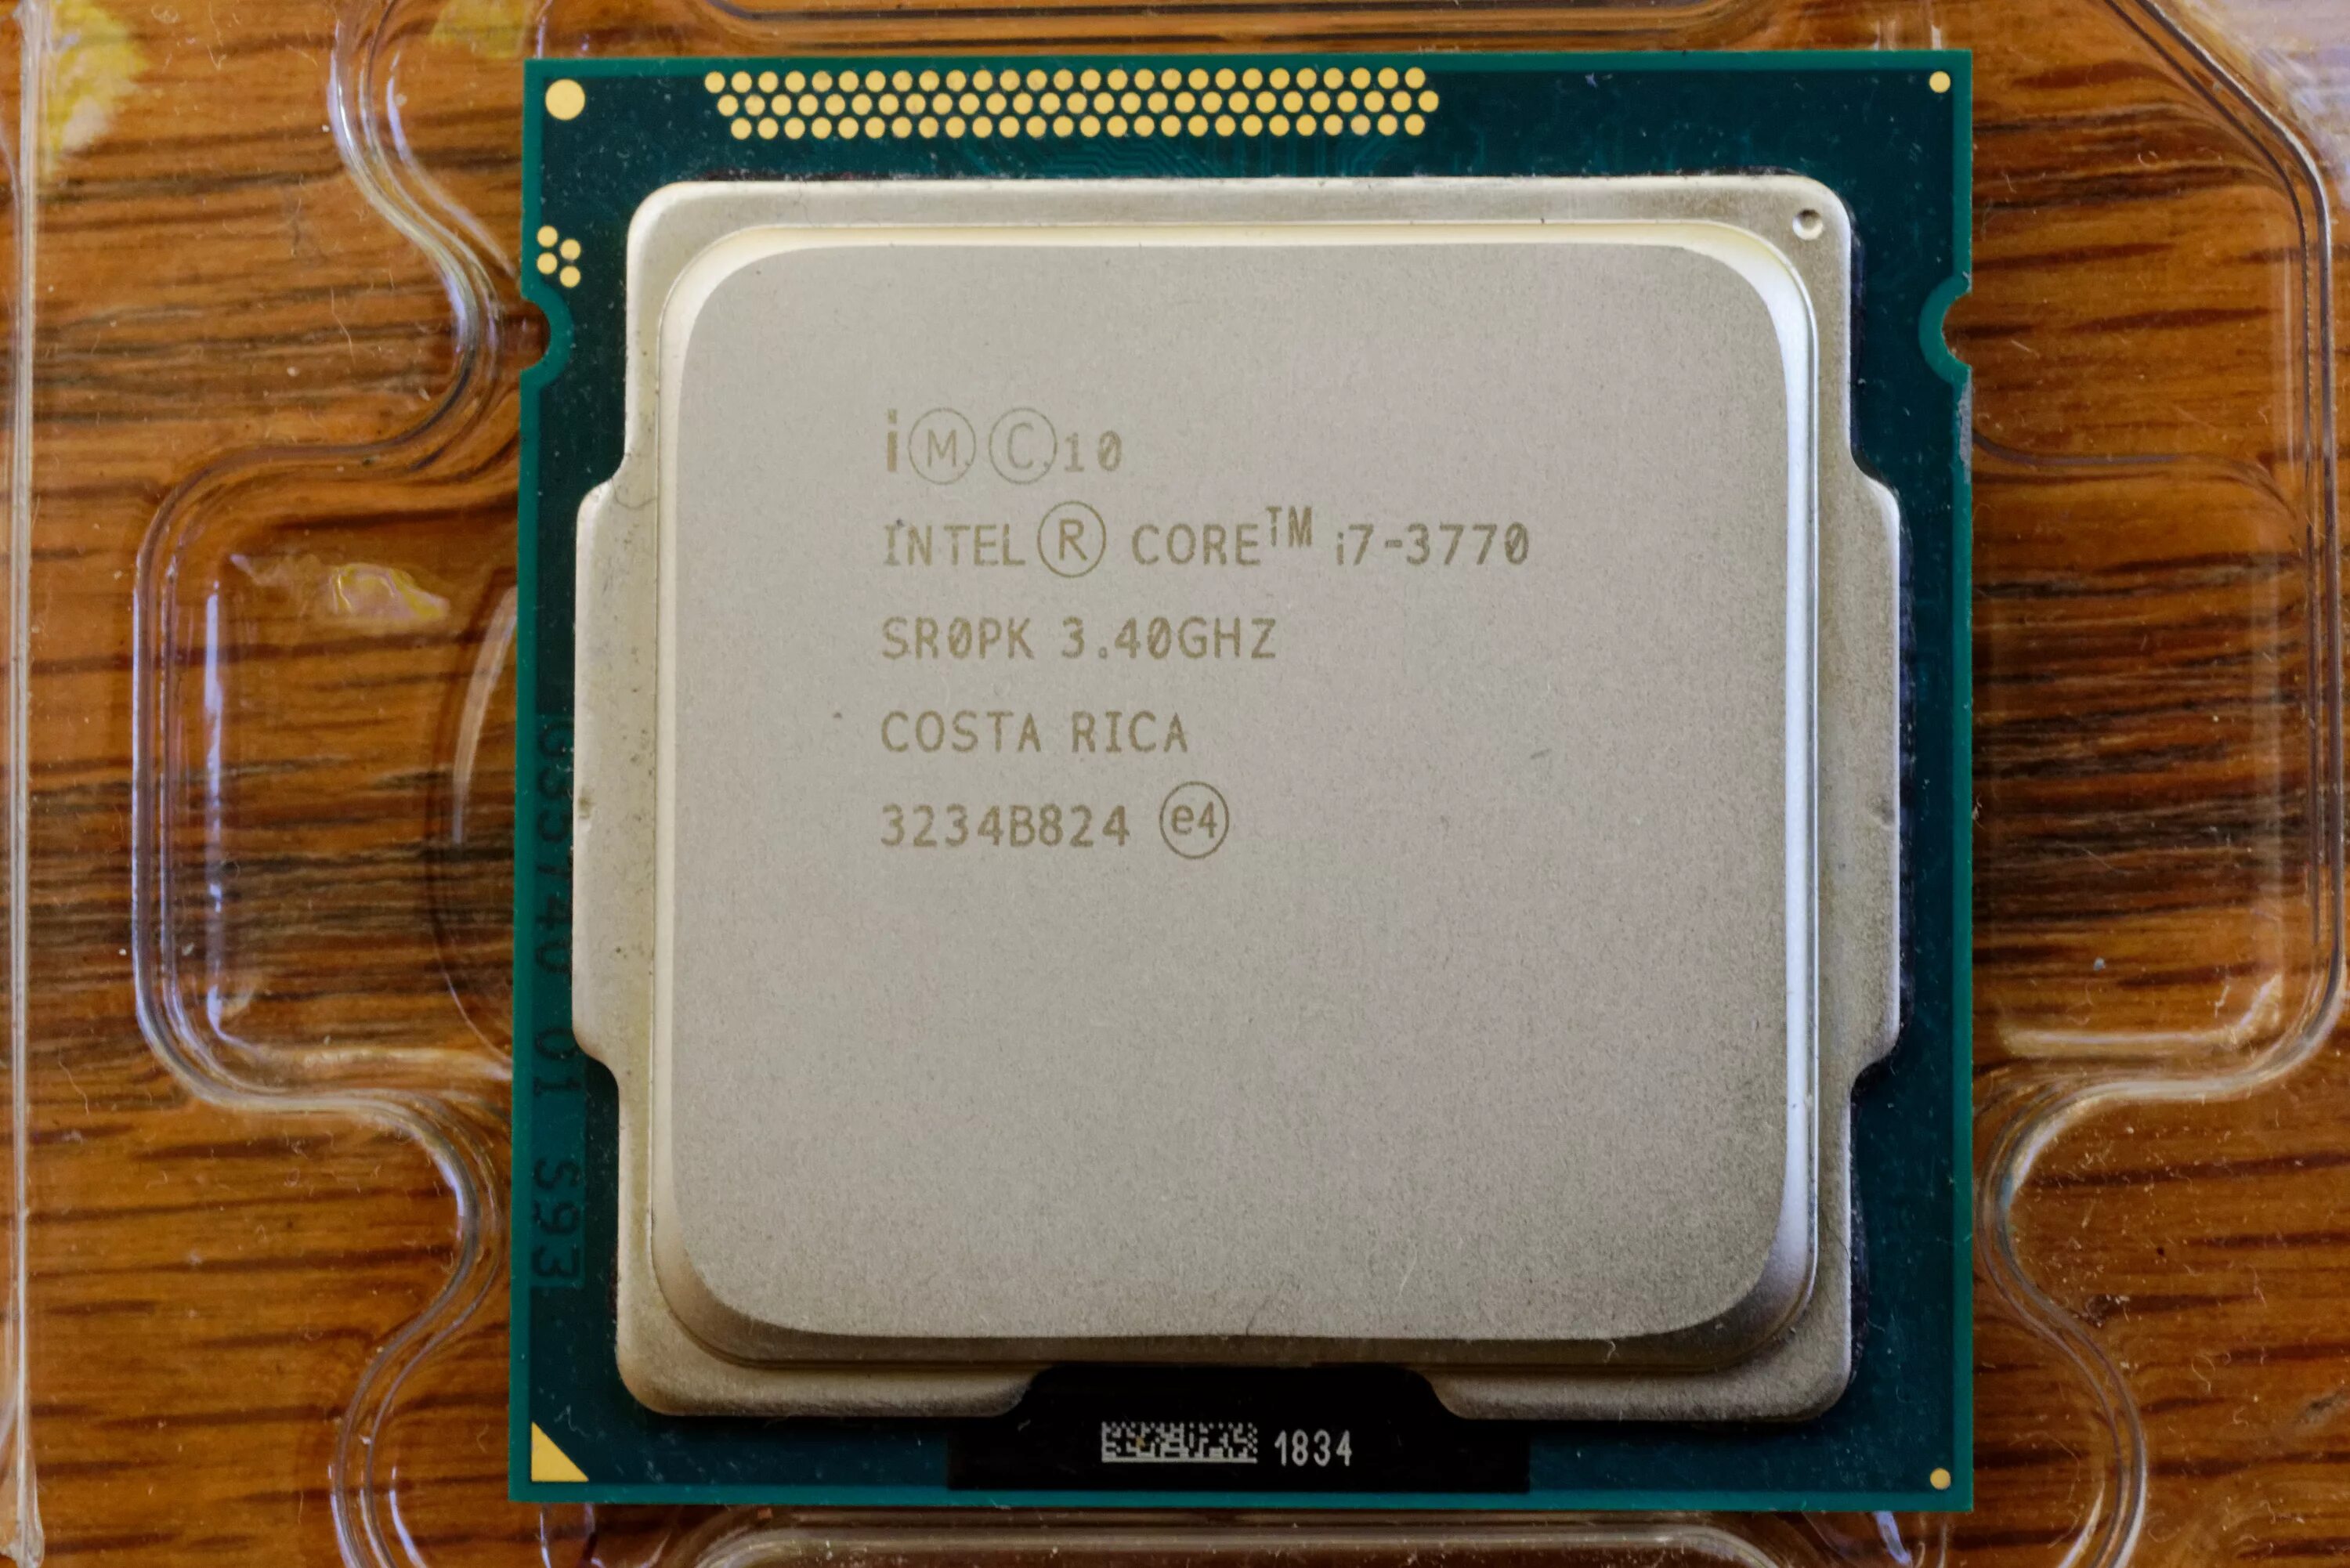 Intel core i7 частота. Core i7 3770k. Процессор Intel Core i7-3770. Intel Core i7-3770, 3800 MHZ. Intel Core i7-3770 поколение.